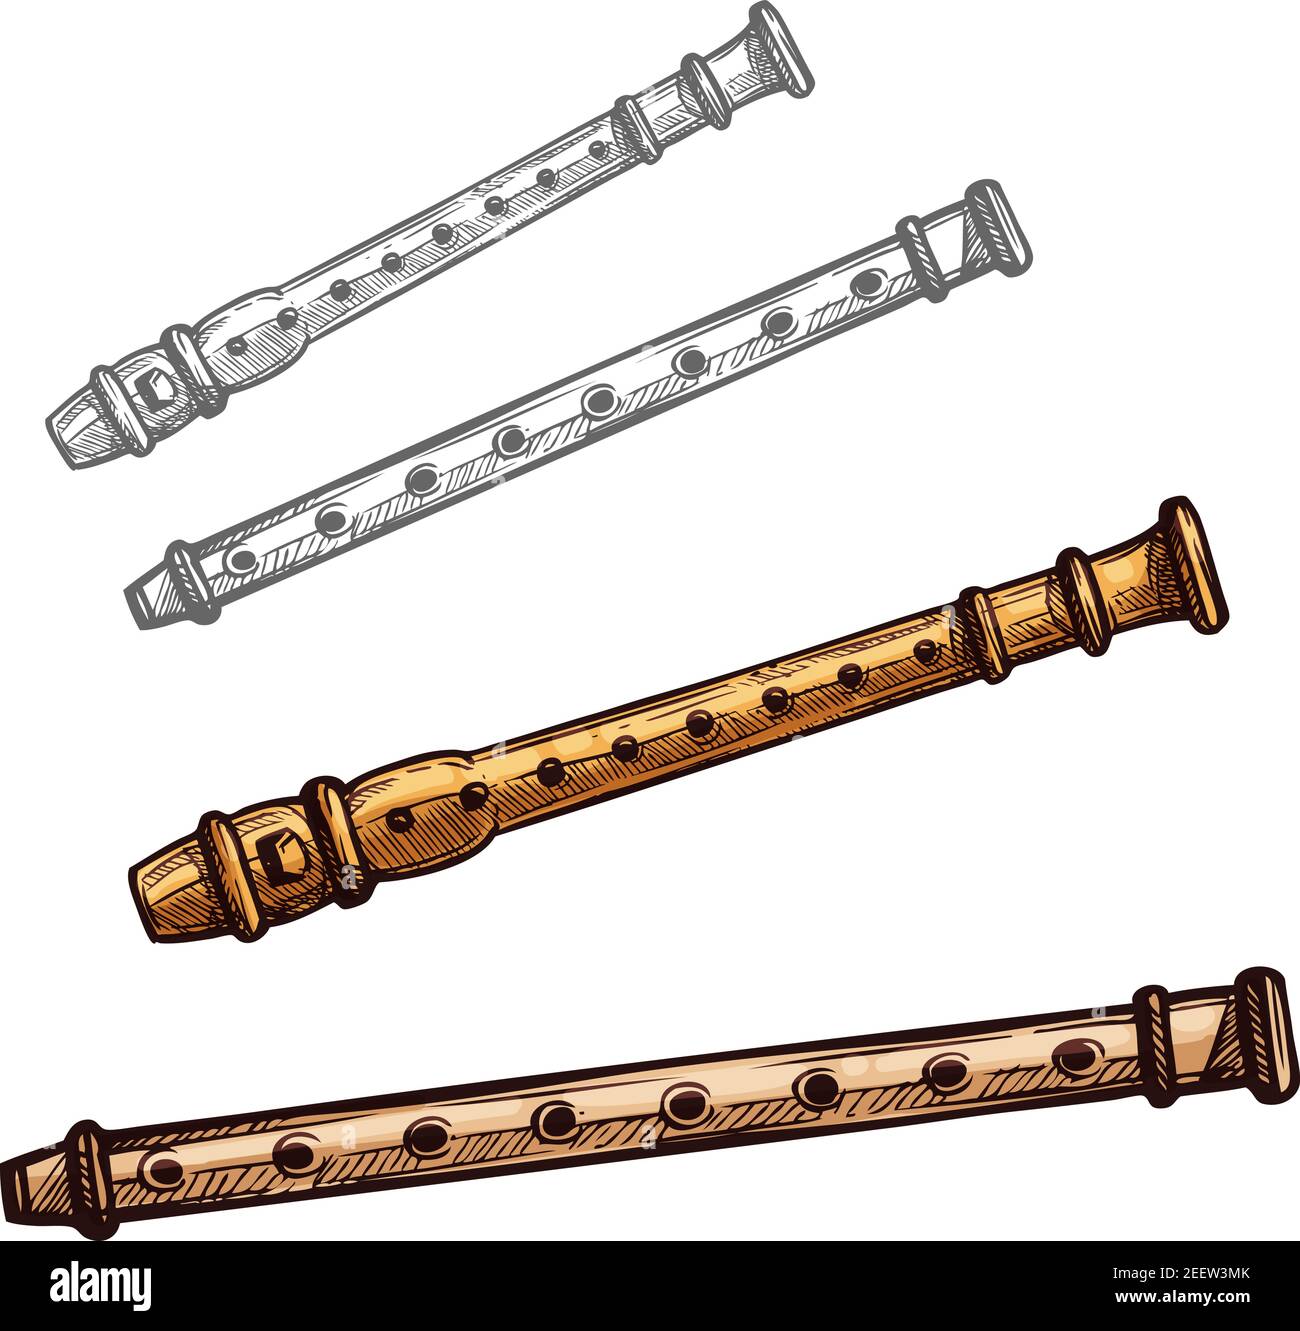 Flauto strumento musicale schizzo isolato. Flauto di legno o tubo di bambù  strumento musicale folk vento per concerti di musica etnica, design  festival d'arte Immagine e Vettoriale - Alamy